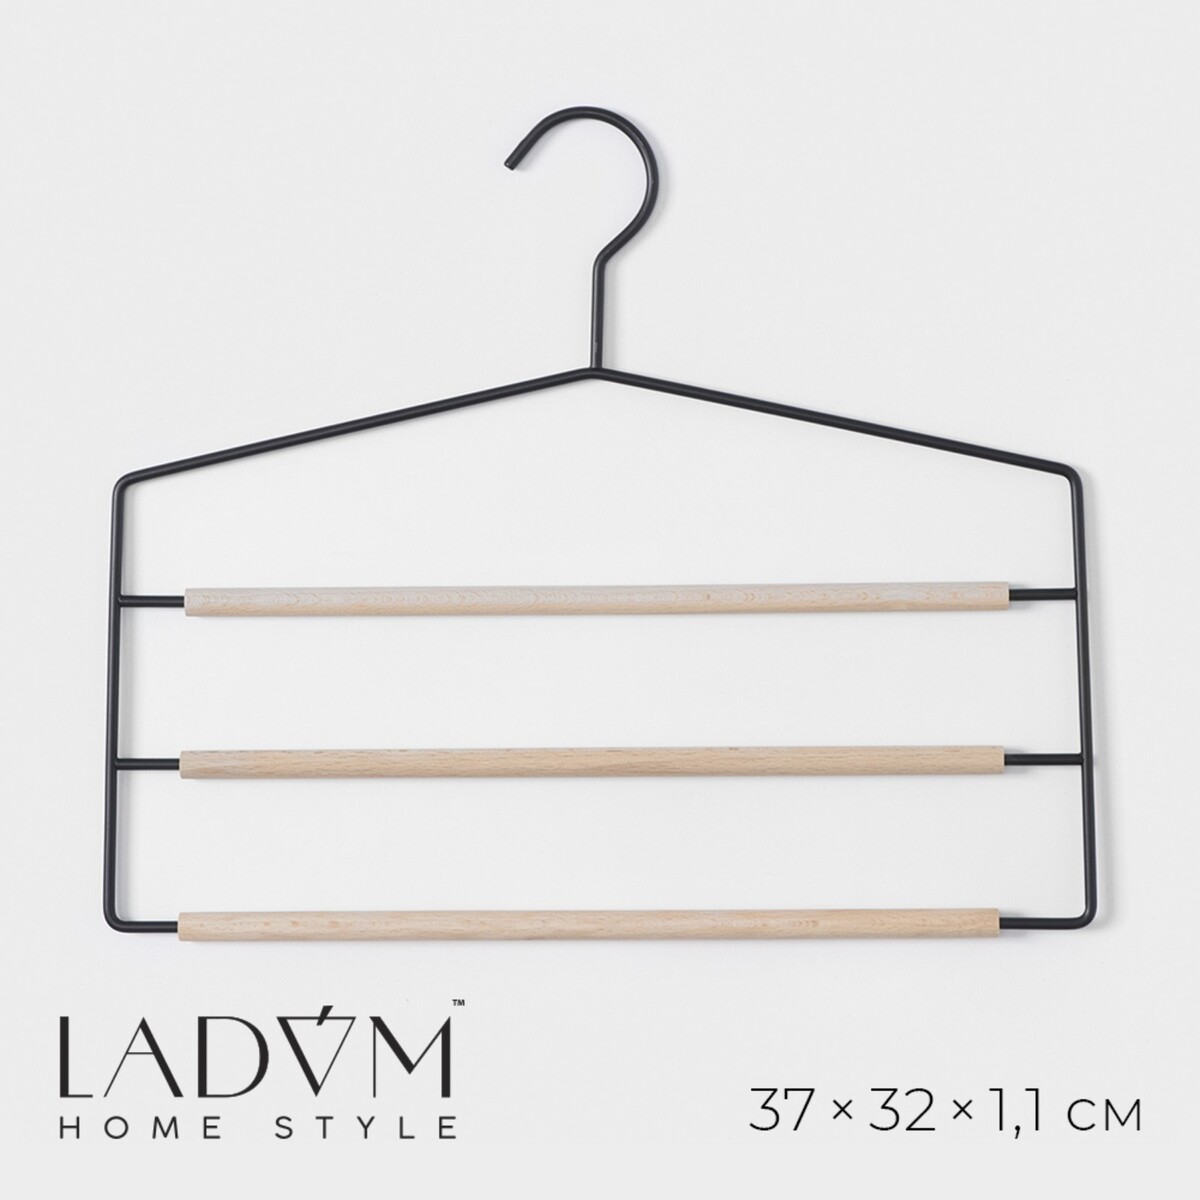 Плечики - вешалки для брюк и юбок многоуровневые ladо́m laconique, 37×31,5×1,1 см, цвет черный плечики вешалка для одежды ladо́m laconique 41 5×22 5×1 см розовый